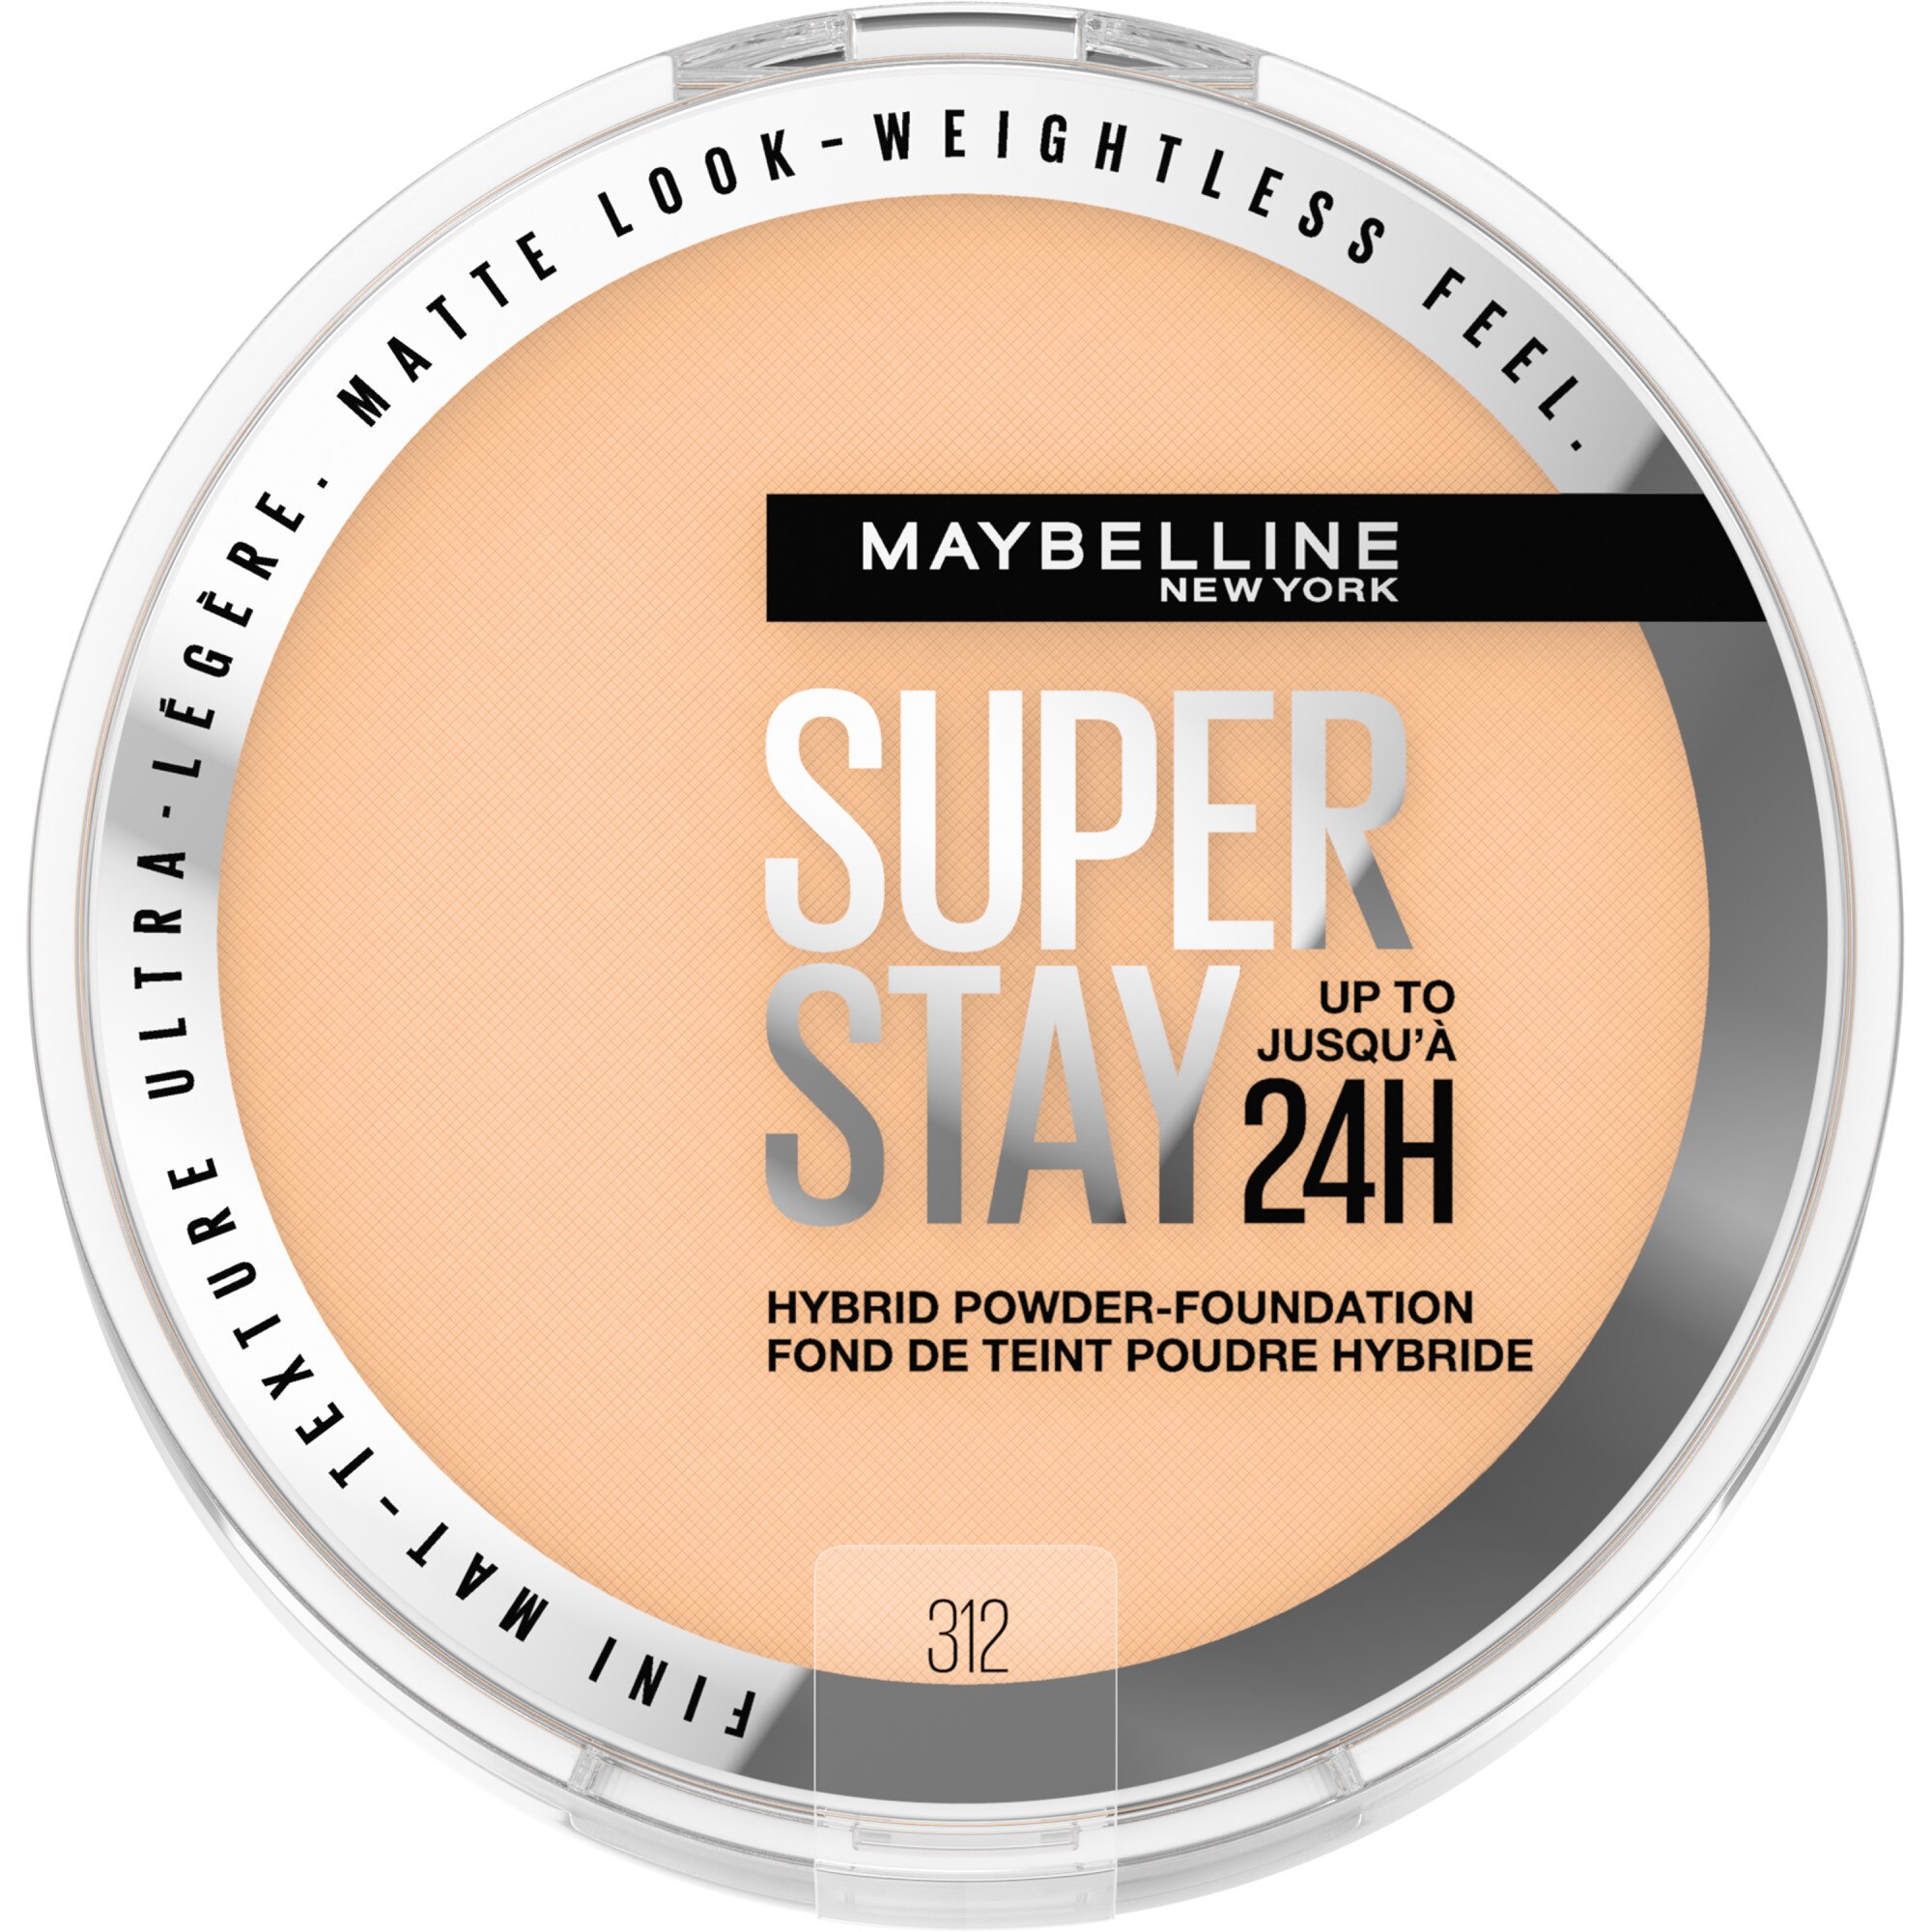 Maybelline New York Super Stay Up To 24HR Hybrid Powder-Foundation, 312, 0.21 Oz , CVS